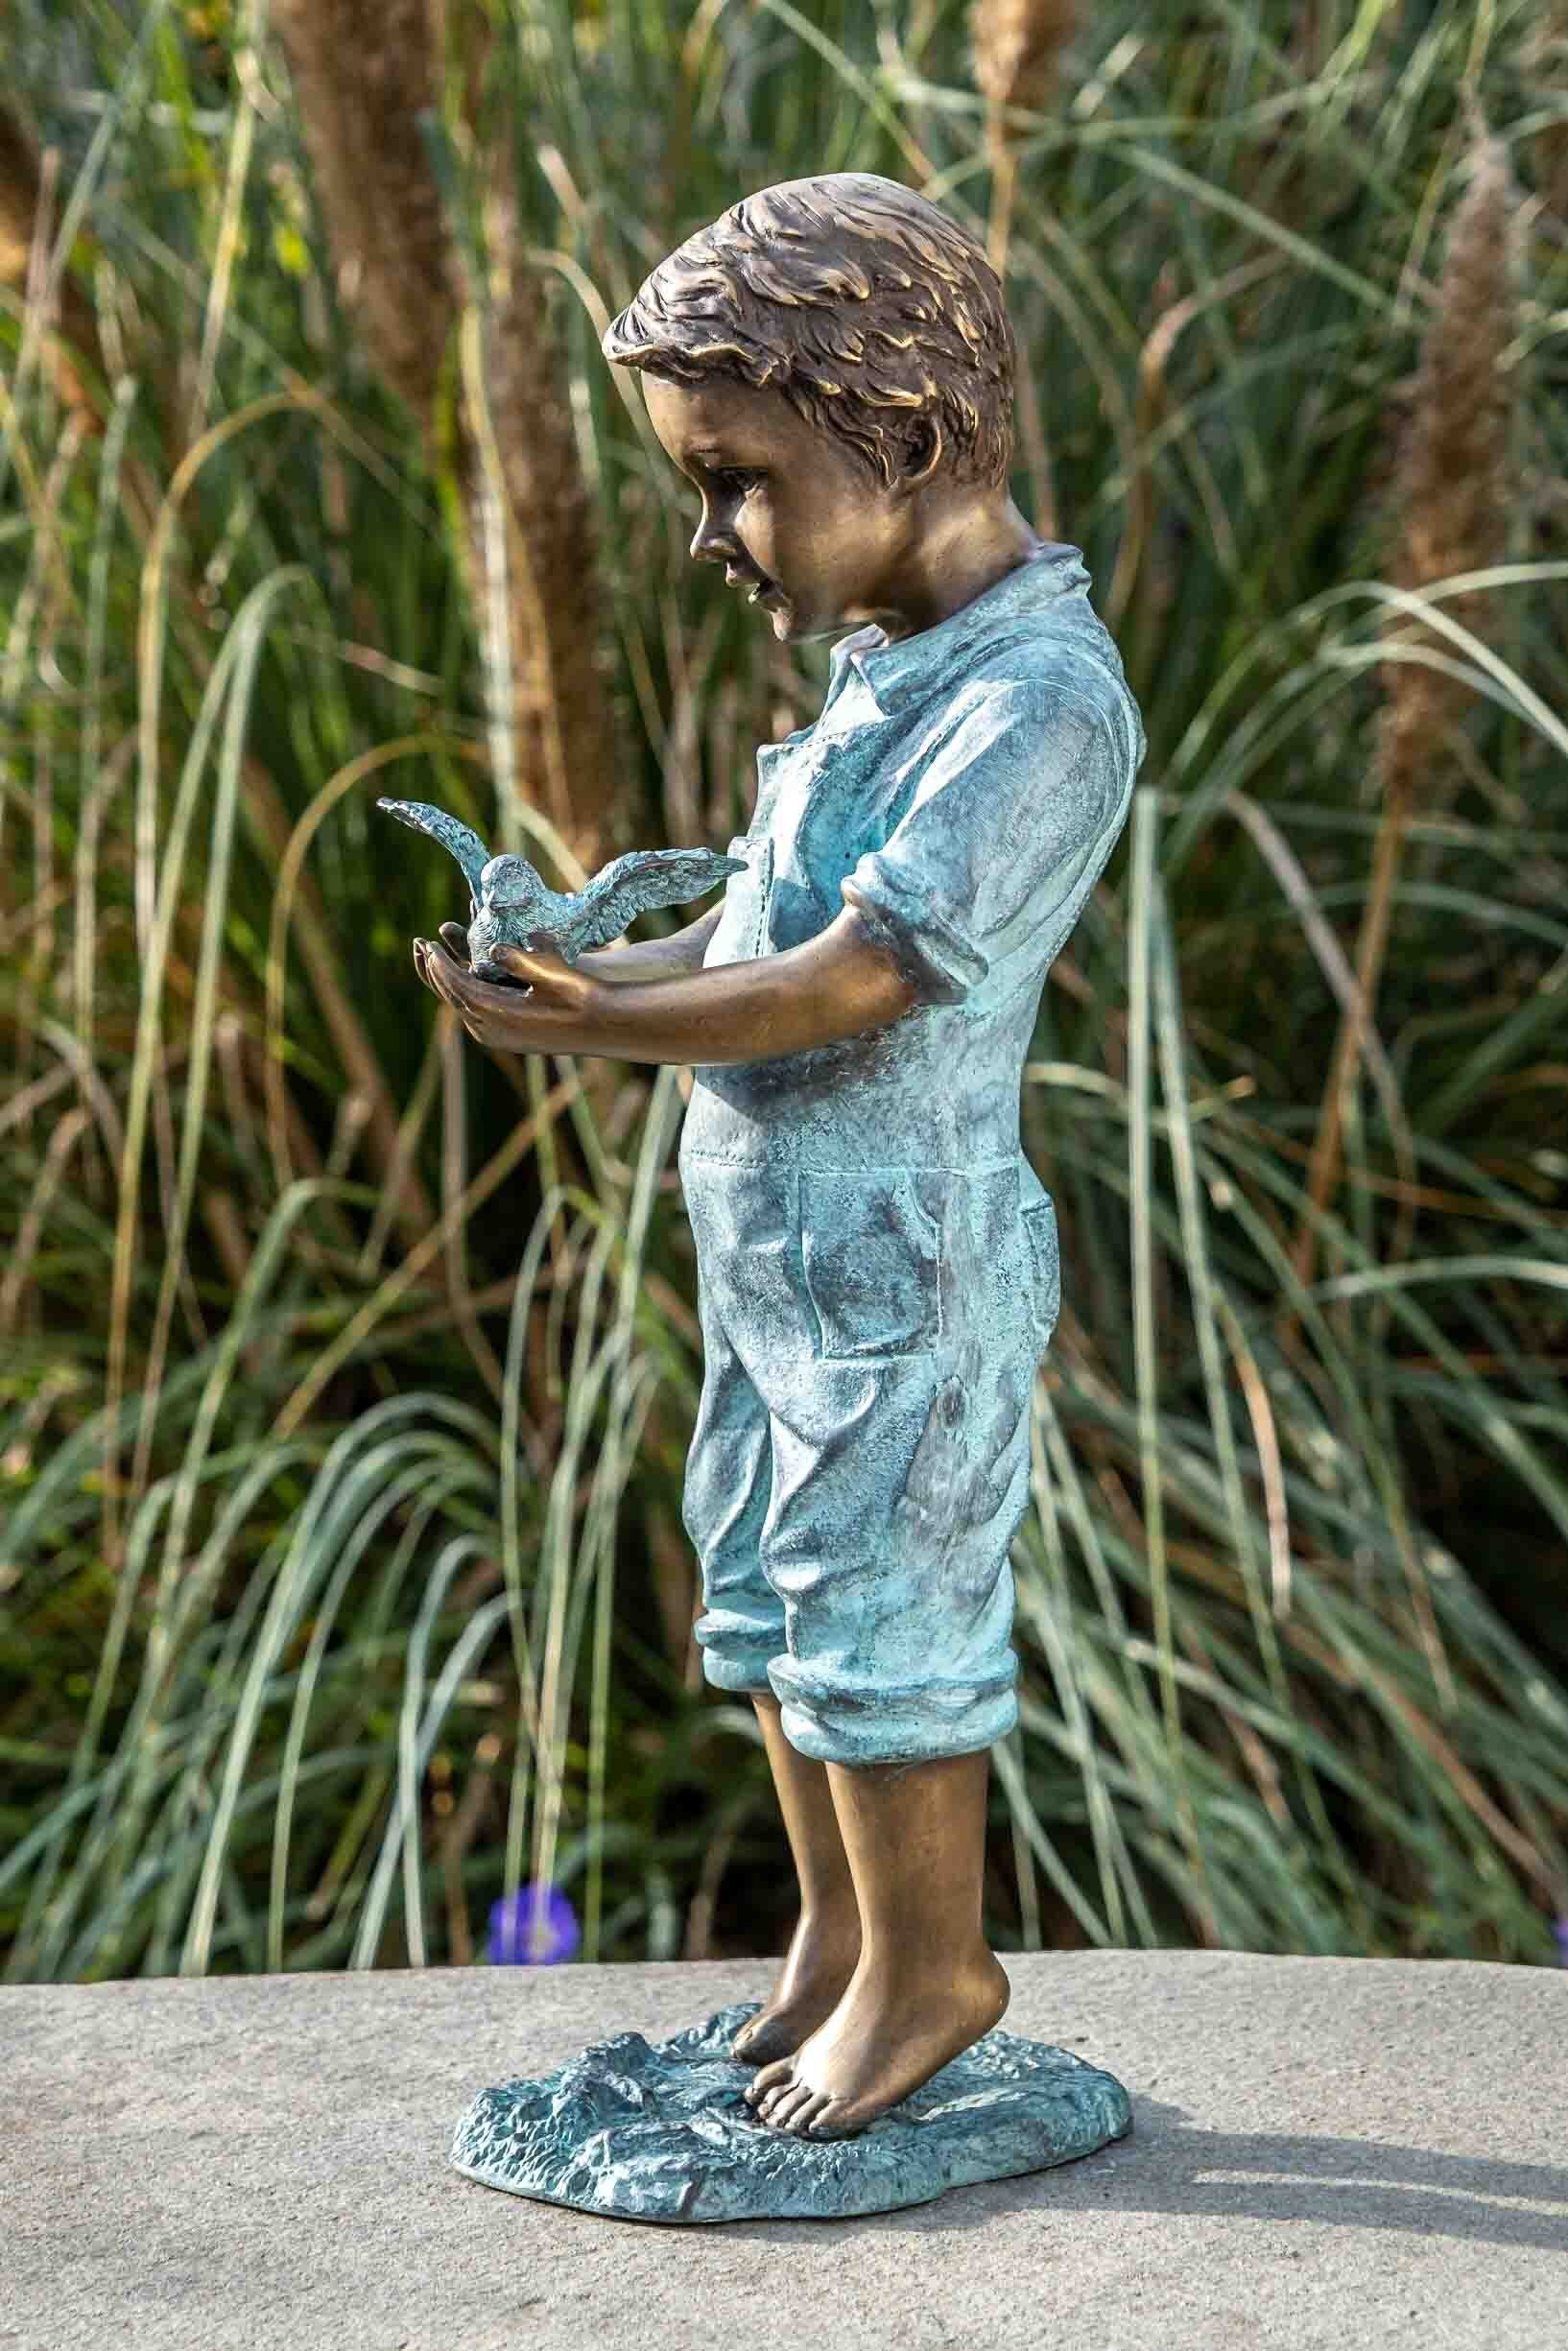 IDYL Gartenfigur IDYL Bronze-Skulptur Junge mit Vogel, Bronze – sehr robust – Langlebig – witterungsbeständig gegen Frost, Regen und UV-Strahlung. Die Modelle werden in Wachsausschmelzverfahren in Bronze gegossen und von Hand patiniert.